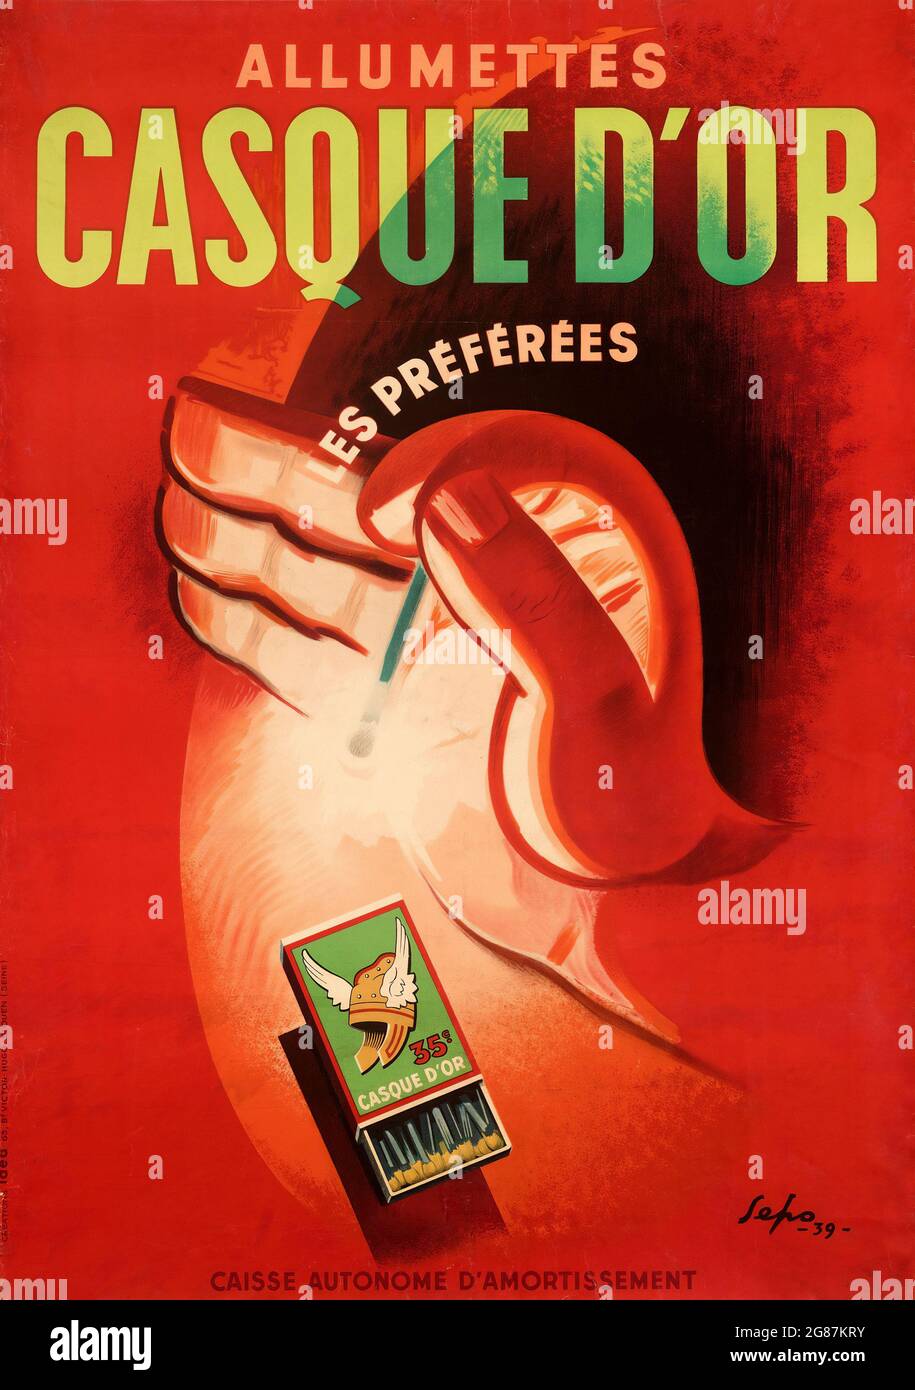 Allumettes Casque D'Or 'Les Préférées. (1939) poster pubblicitario francese per le partite (partite di casco in oro). Illustrazione di Seppo. Foto Stock